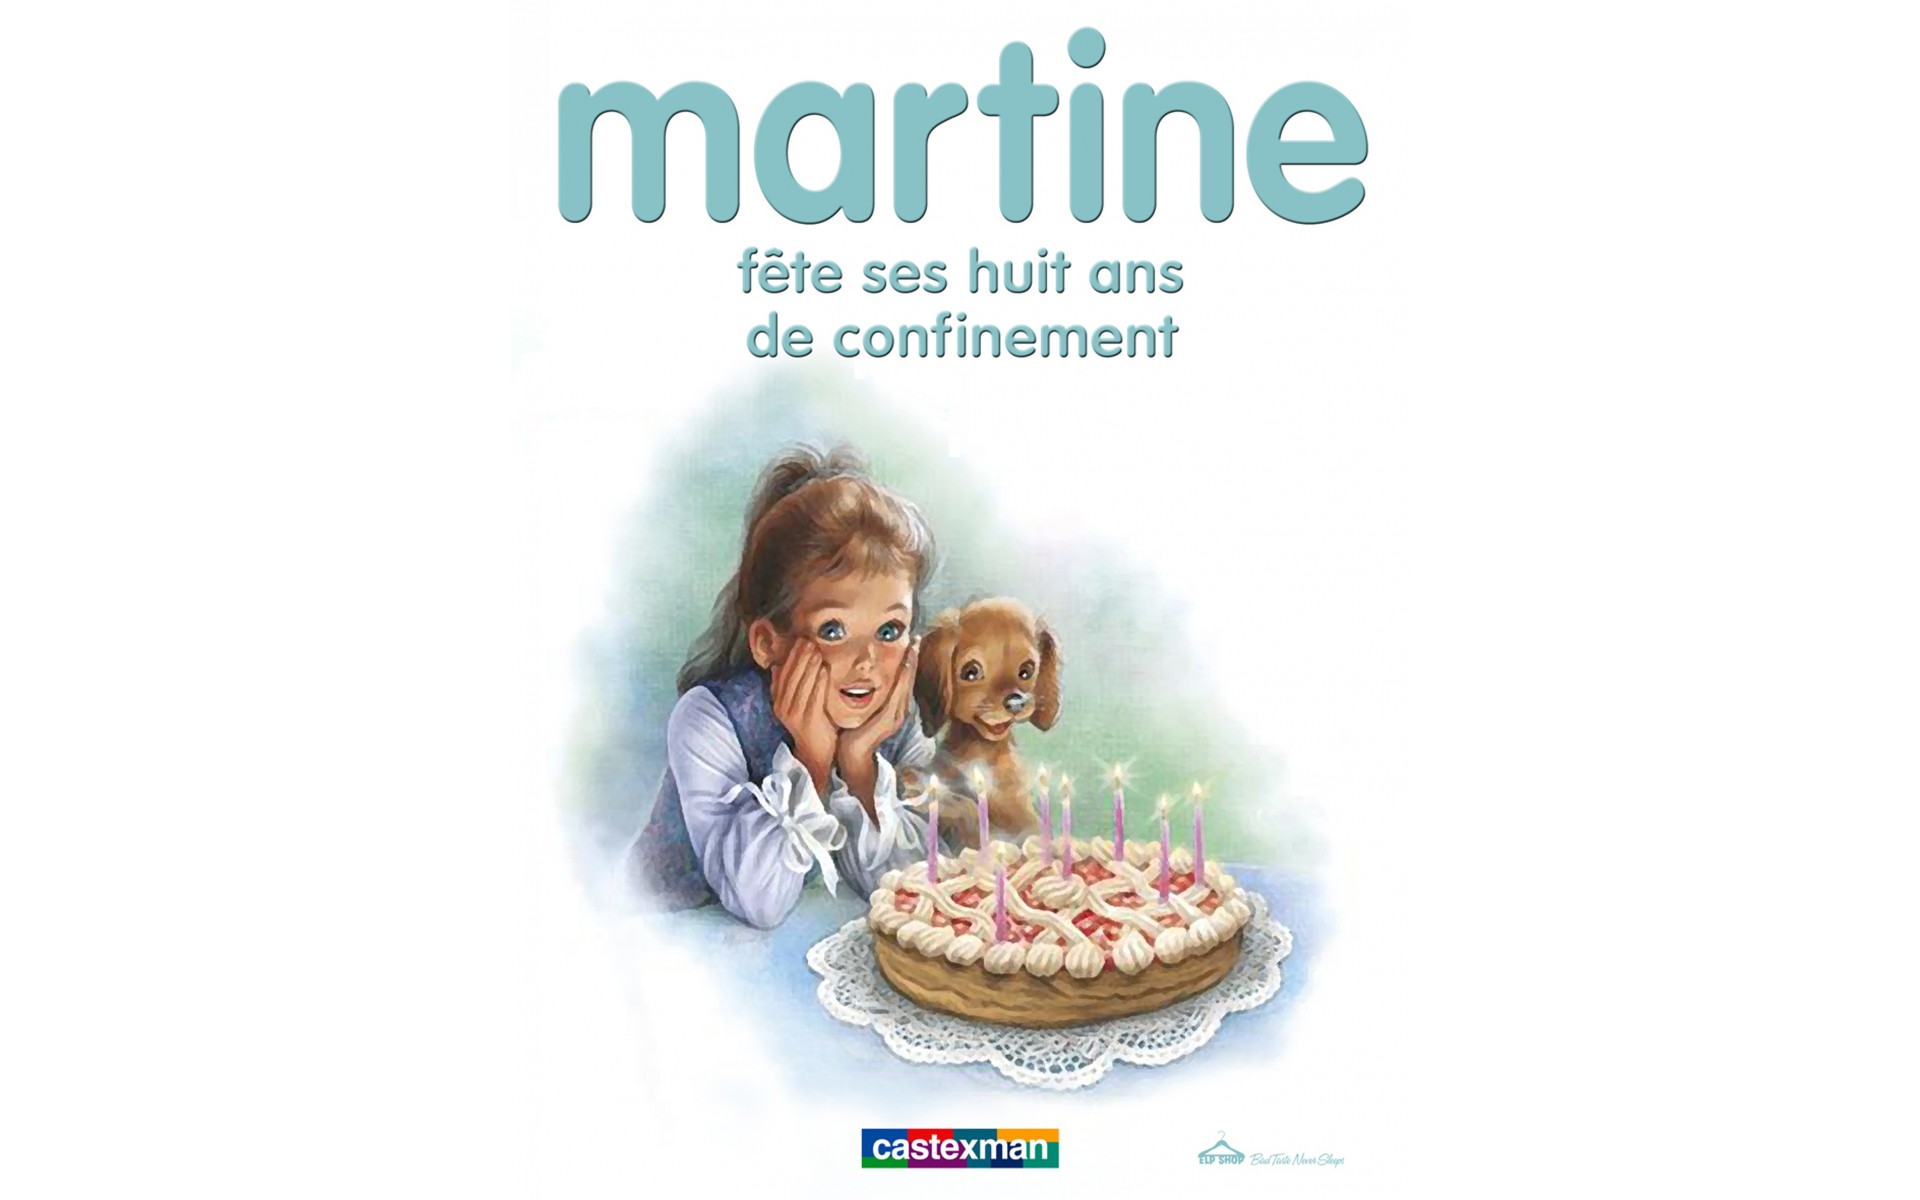 Martine fête ses huit ans de confinement.